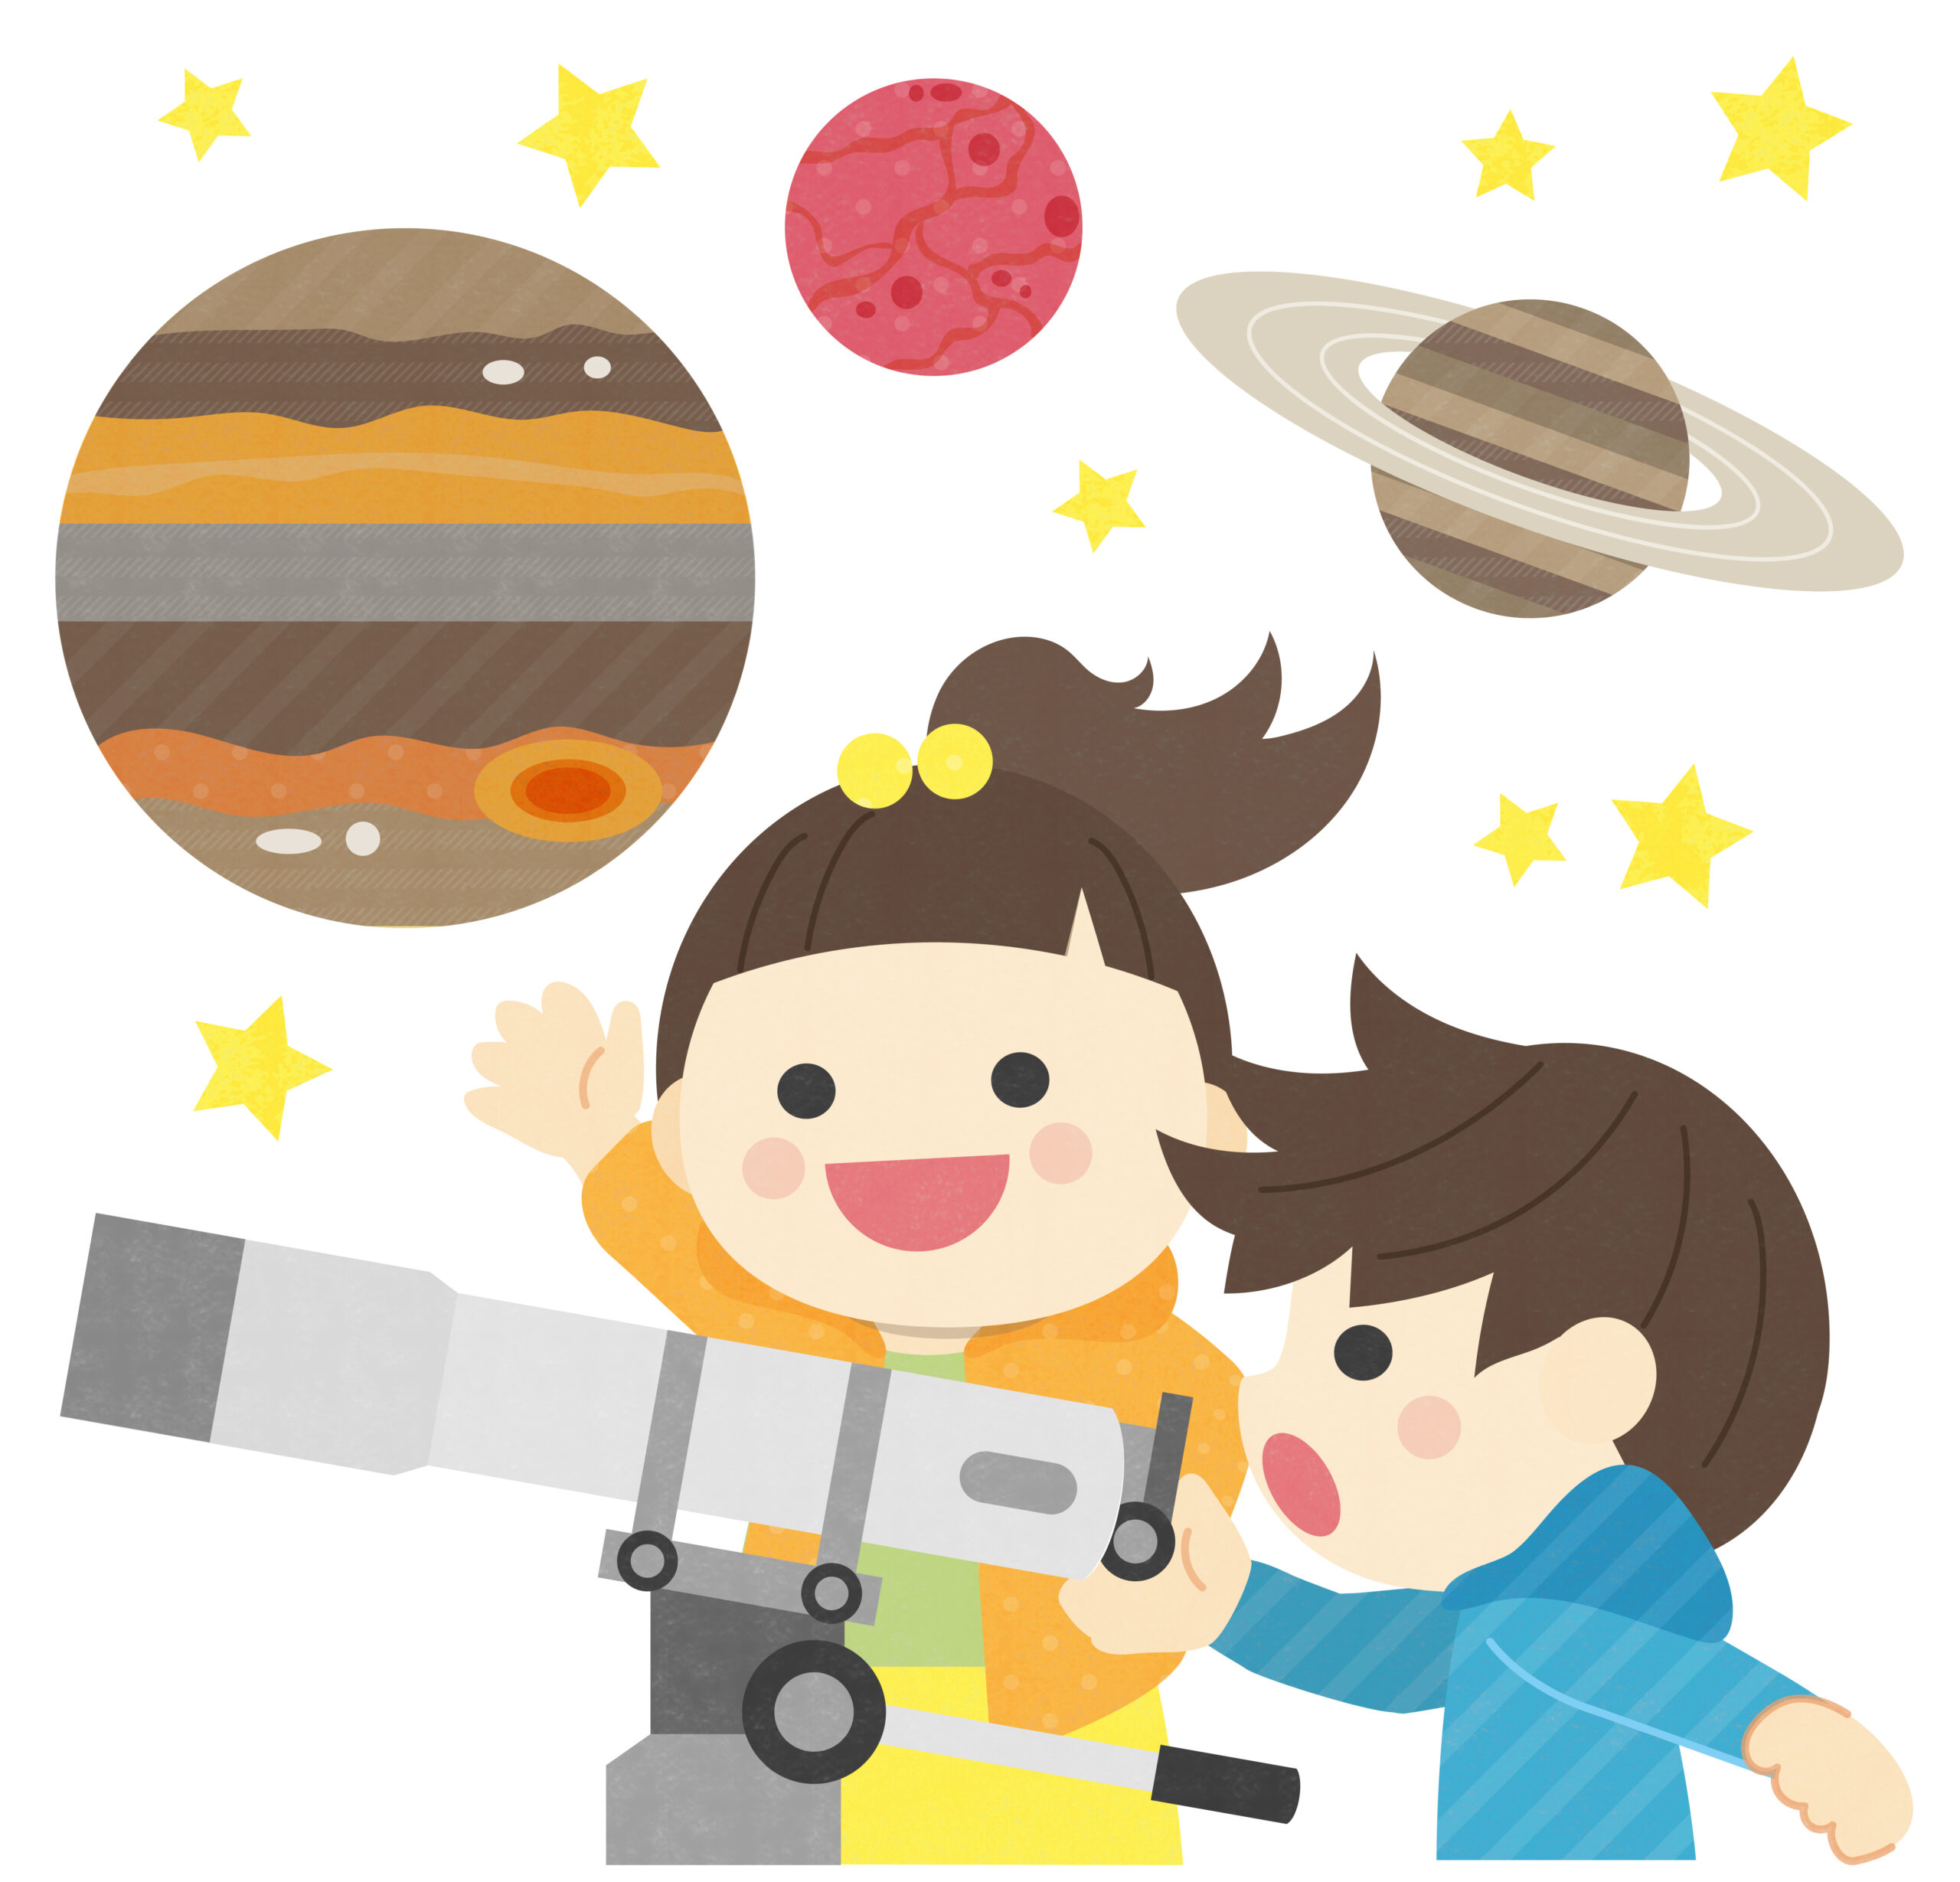 【1月11日】ビバシティ彦根で「月と星を見る会」が開催！大きな天体望遠鏡で月や星の様子を観察してみよう♪